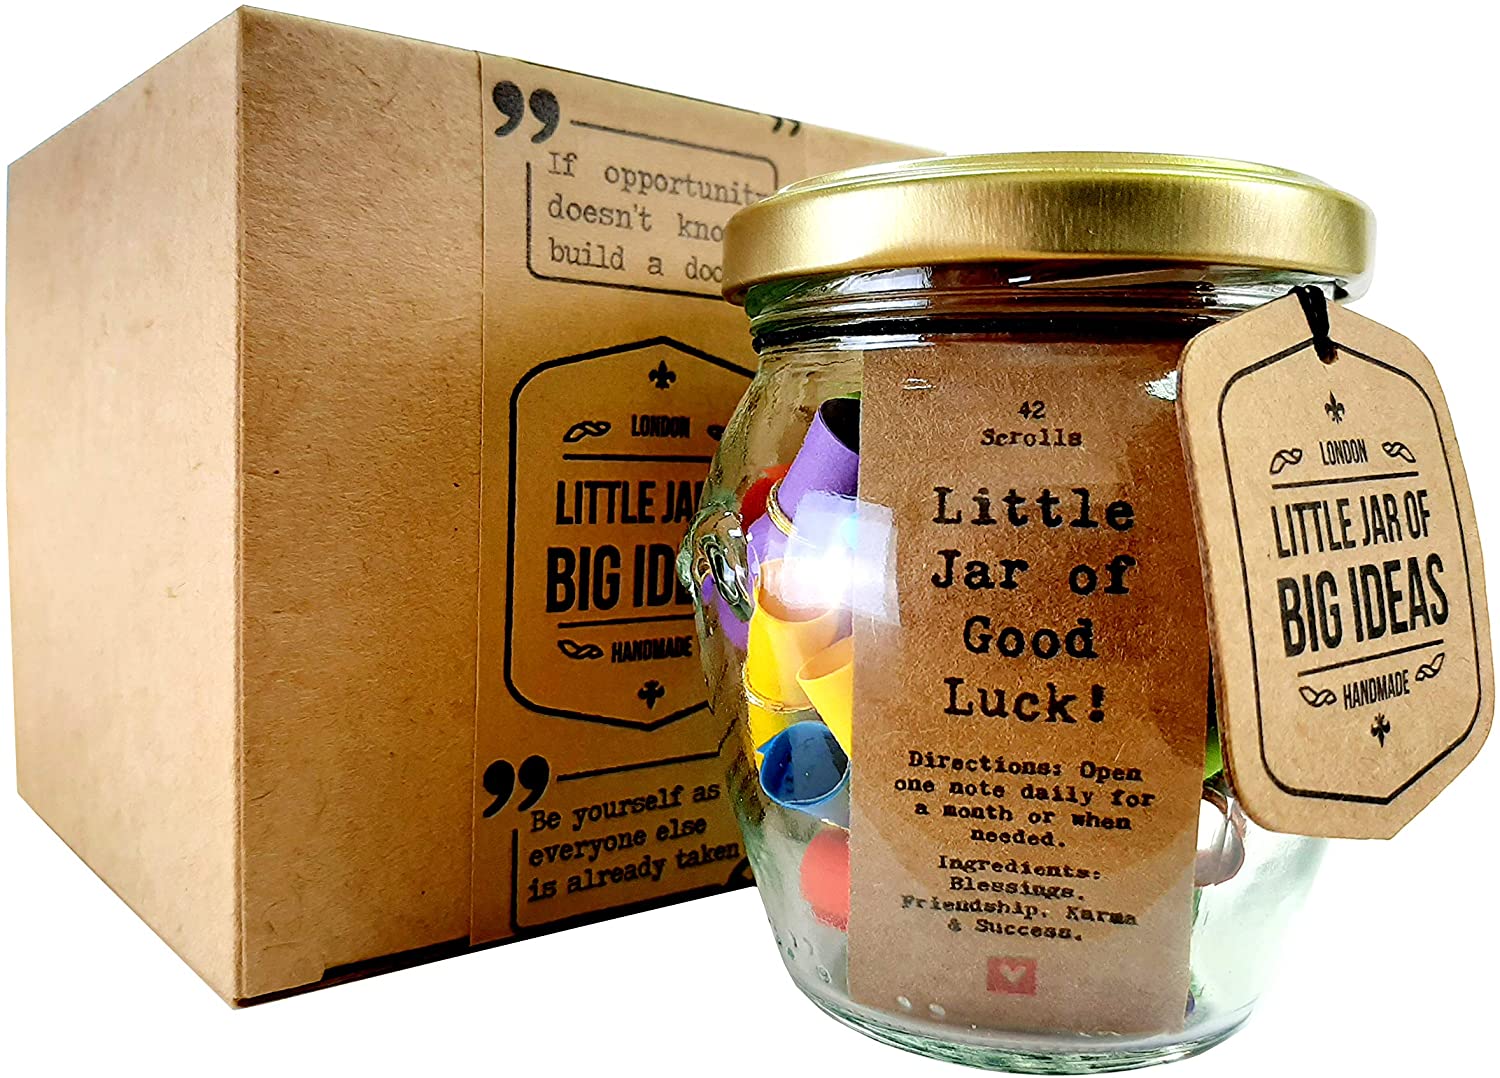 Little Jar of Good Luck Little Jar Of Big Ideas